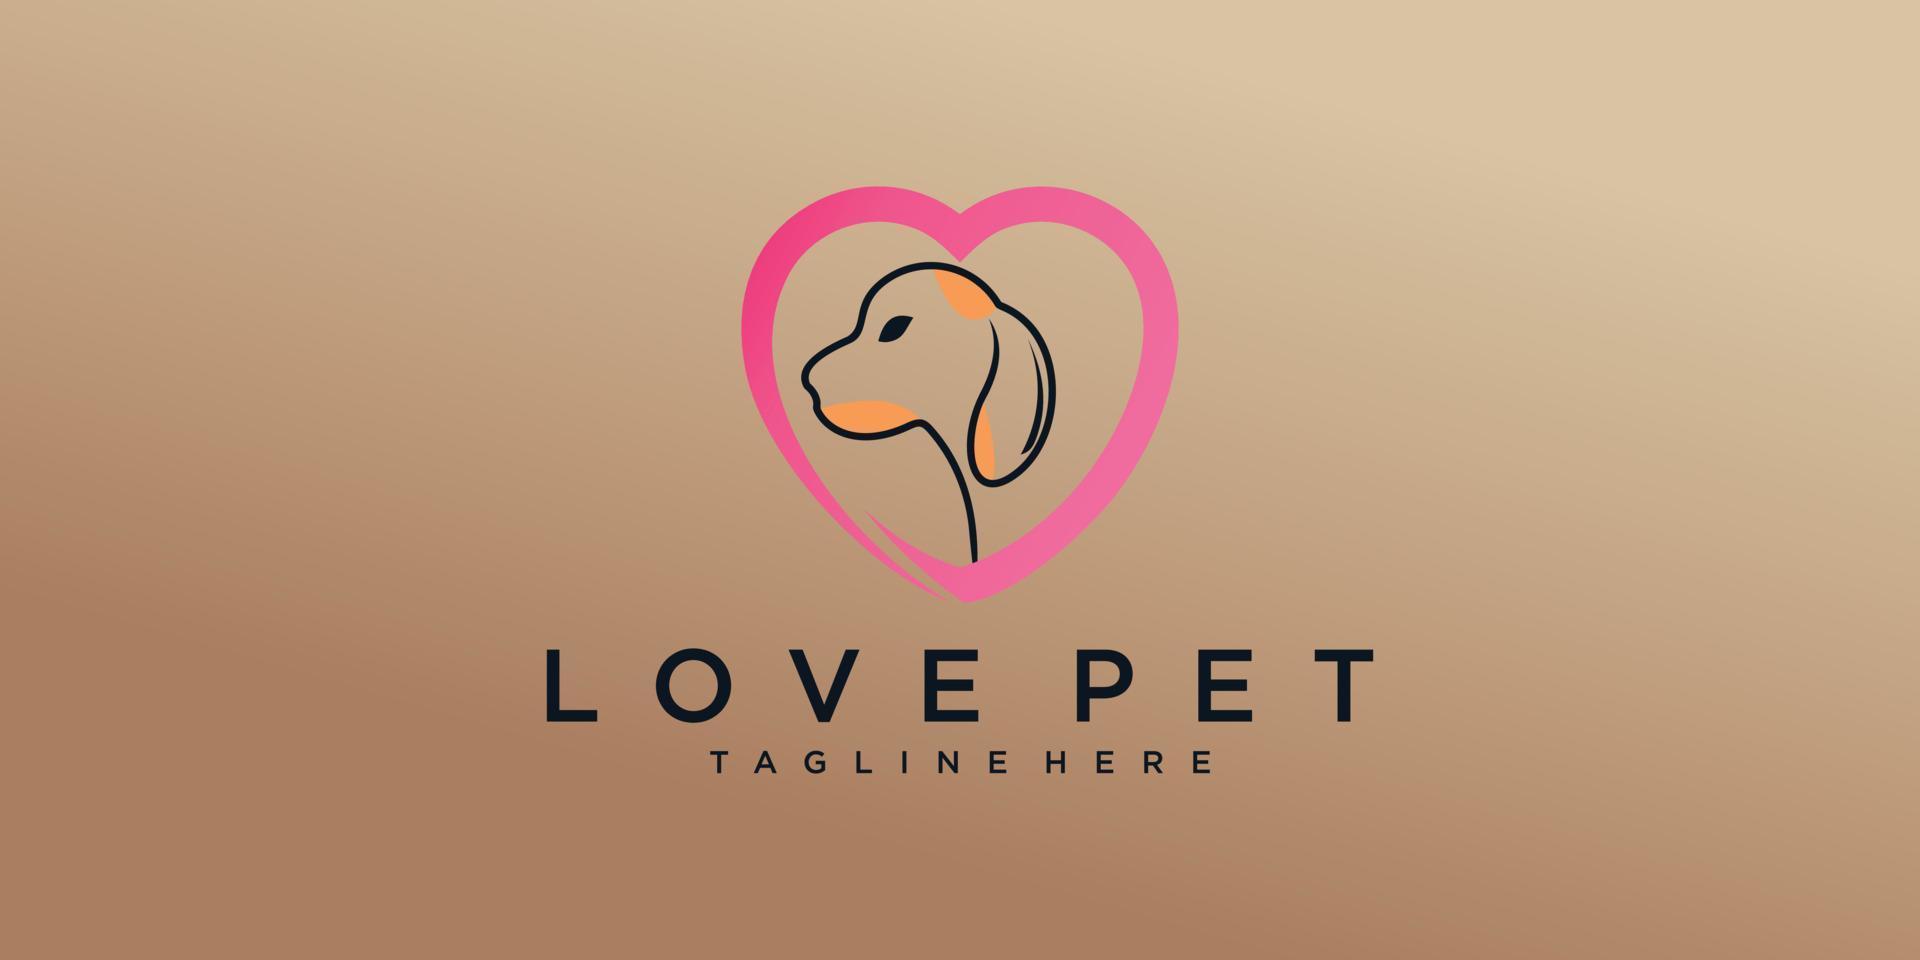 Pet love  logo design with love unique Premium vector